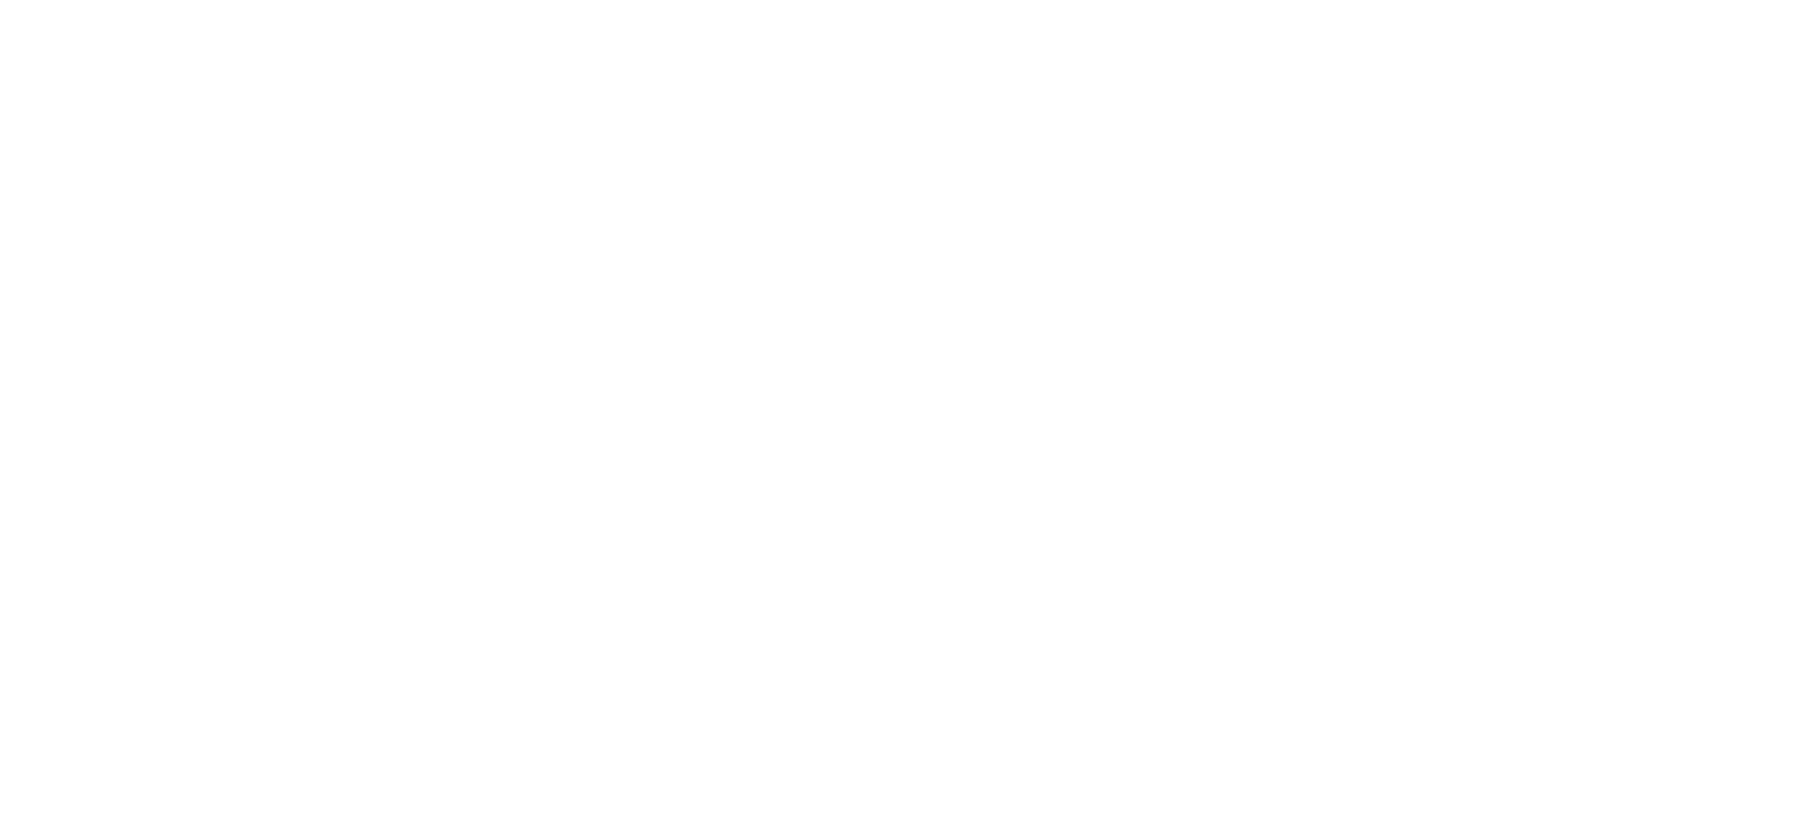 uWave logo all white